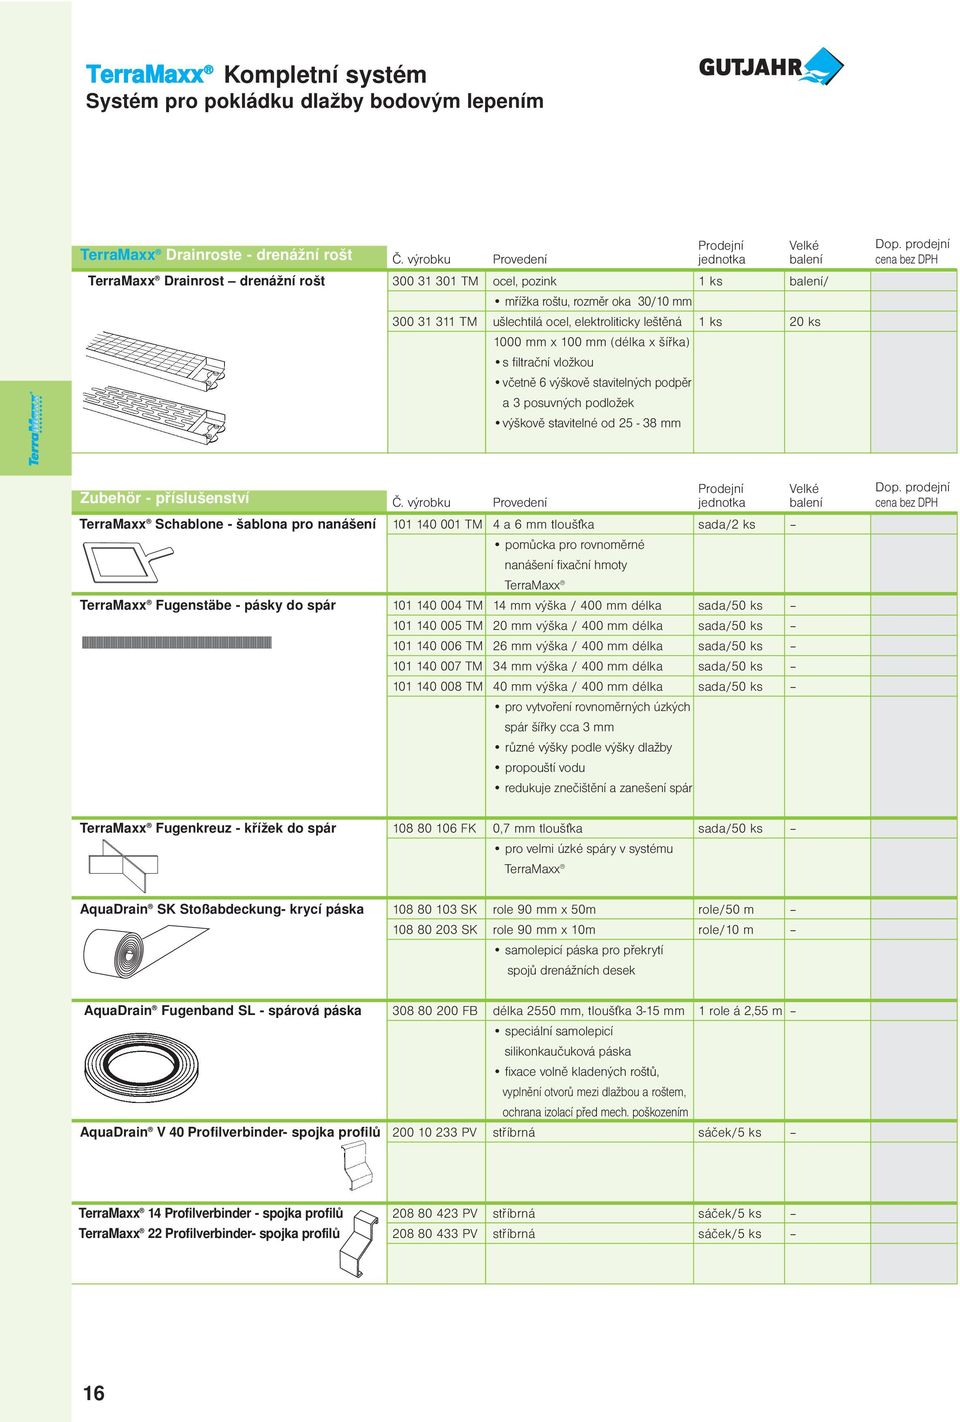 elektroliticky leštěná 1 ks 20 ks 1000 mm x 100 mm (délka x šířka) s filtrační vložkou včetně 6 výškově stavitelných podpěr a 3 posuvných podložek výškově stavitelné od 25-38 mm Zubehör -